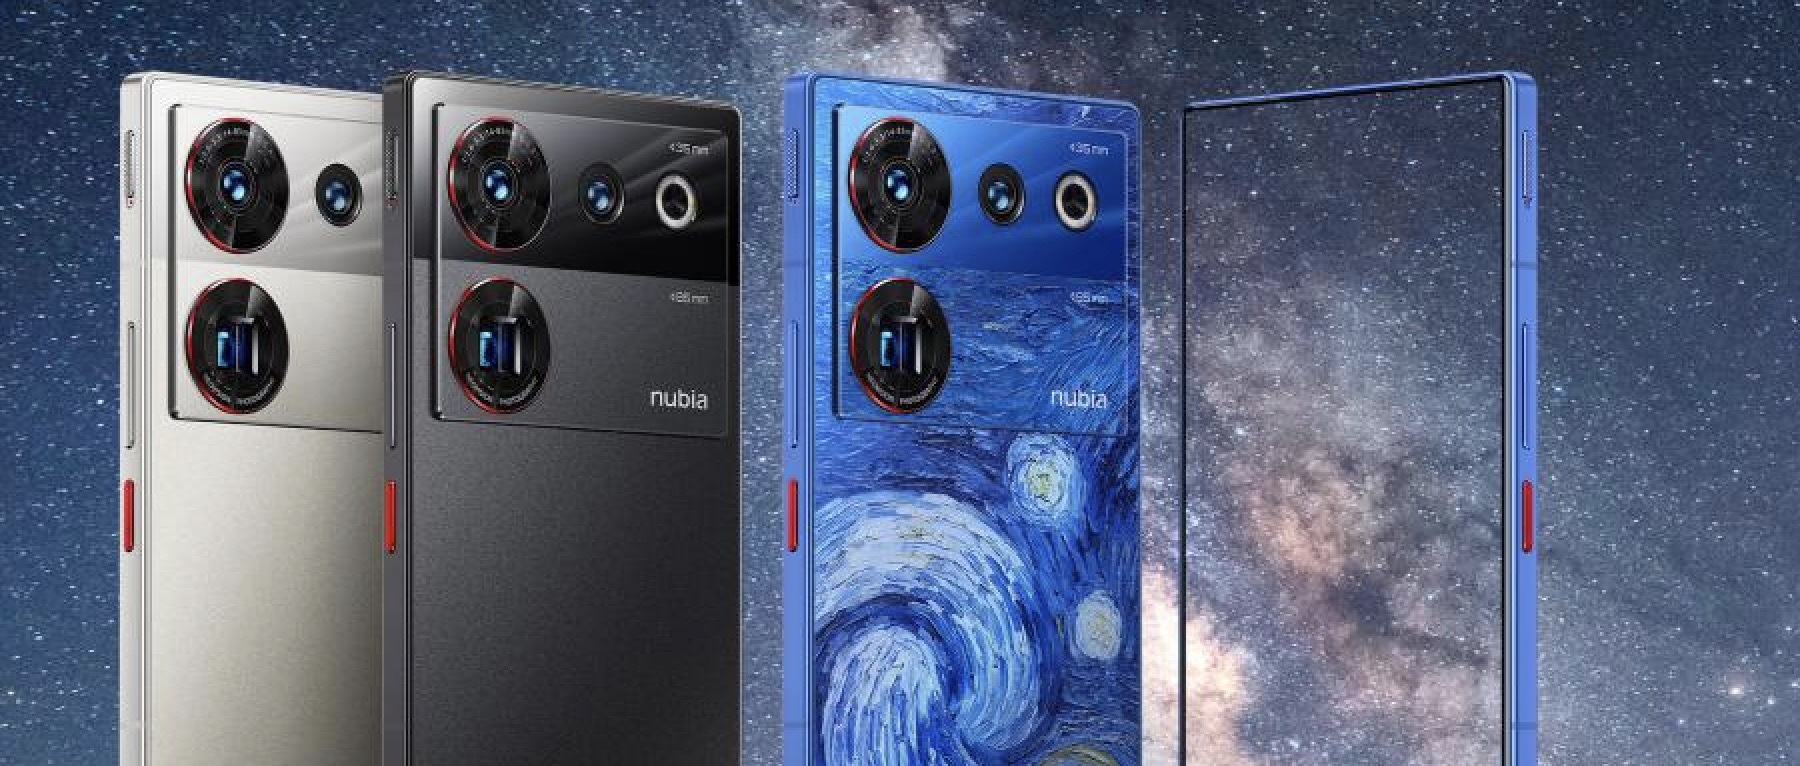 努比亚发布第四代屏下摄像技术，亮出首款智能眼镜，Z50 Ultra 3999元起